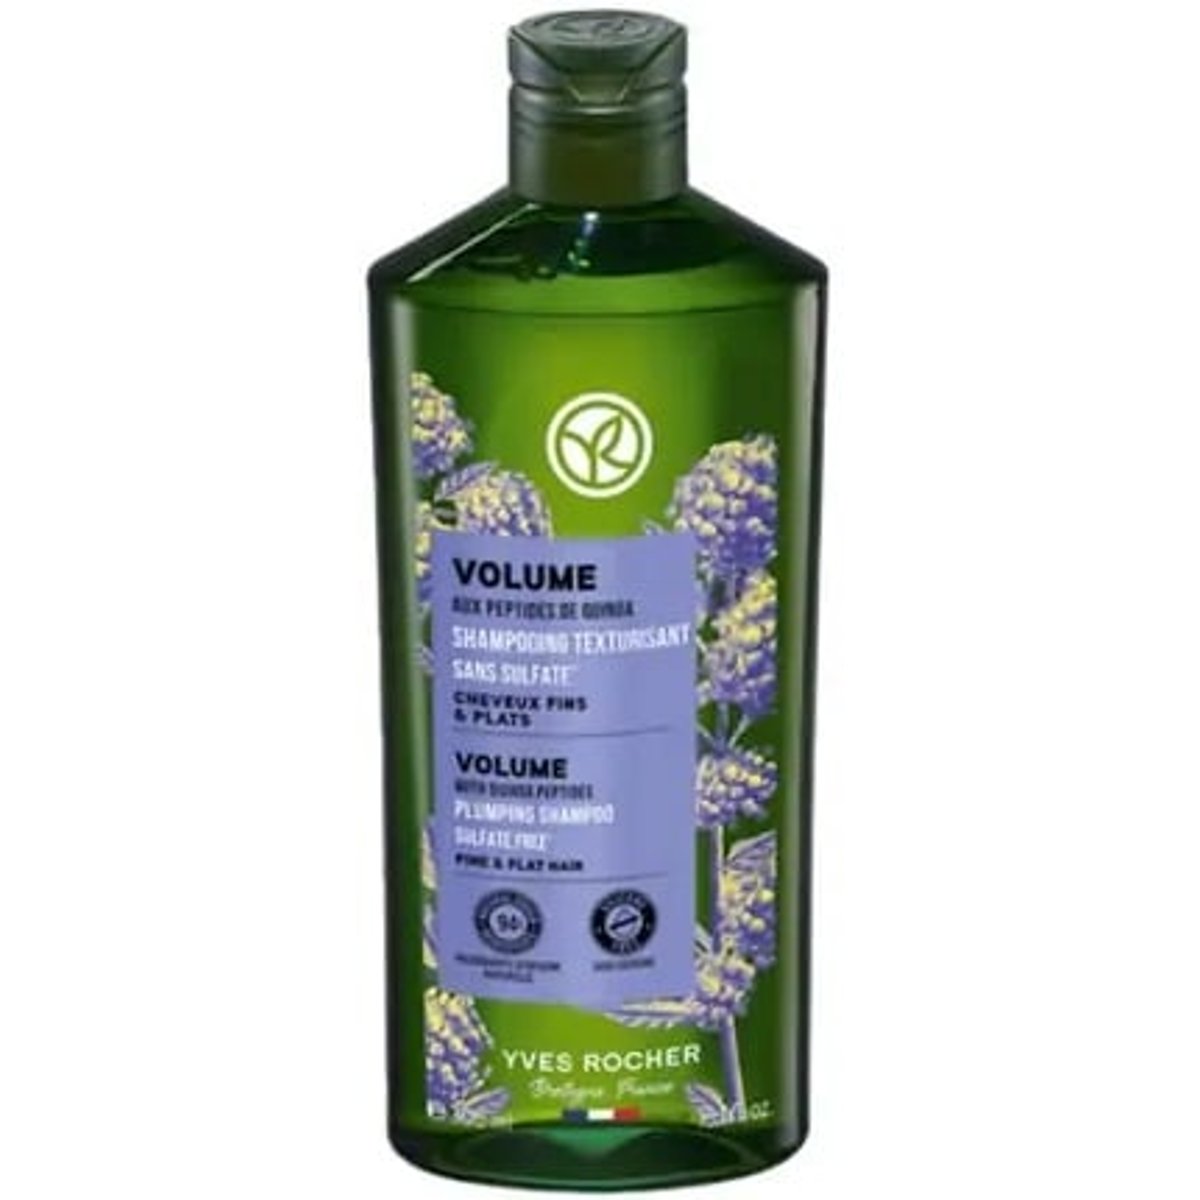 Yves Rocher Volume Šampon pro větší objem vlasů s peptidy z quinoi​